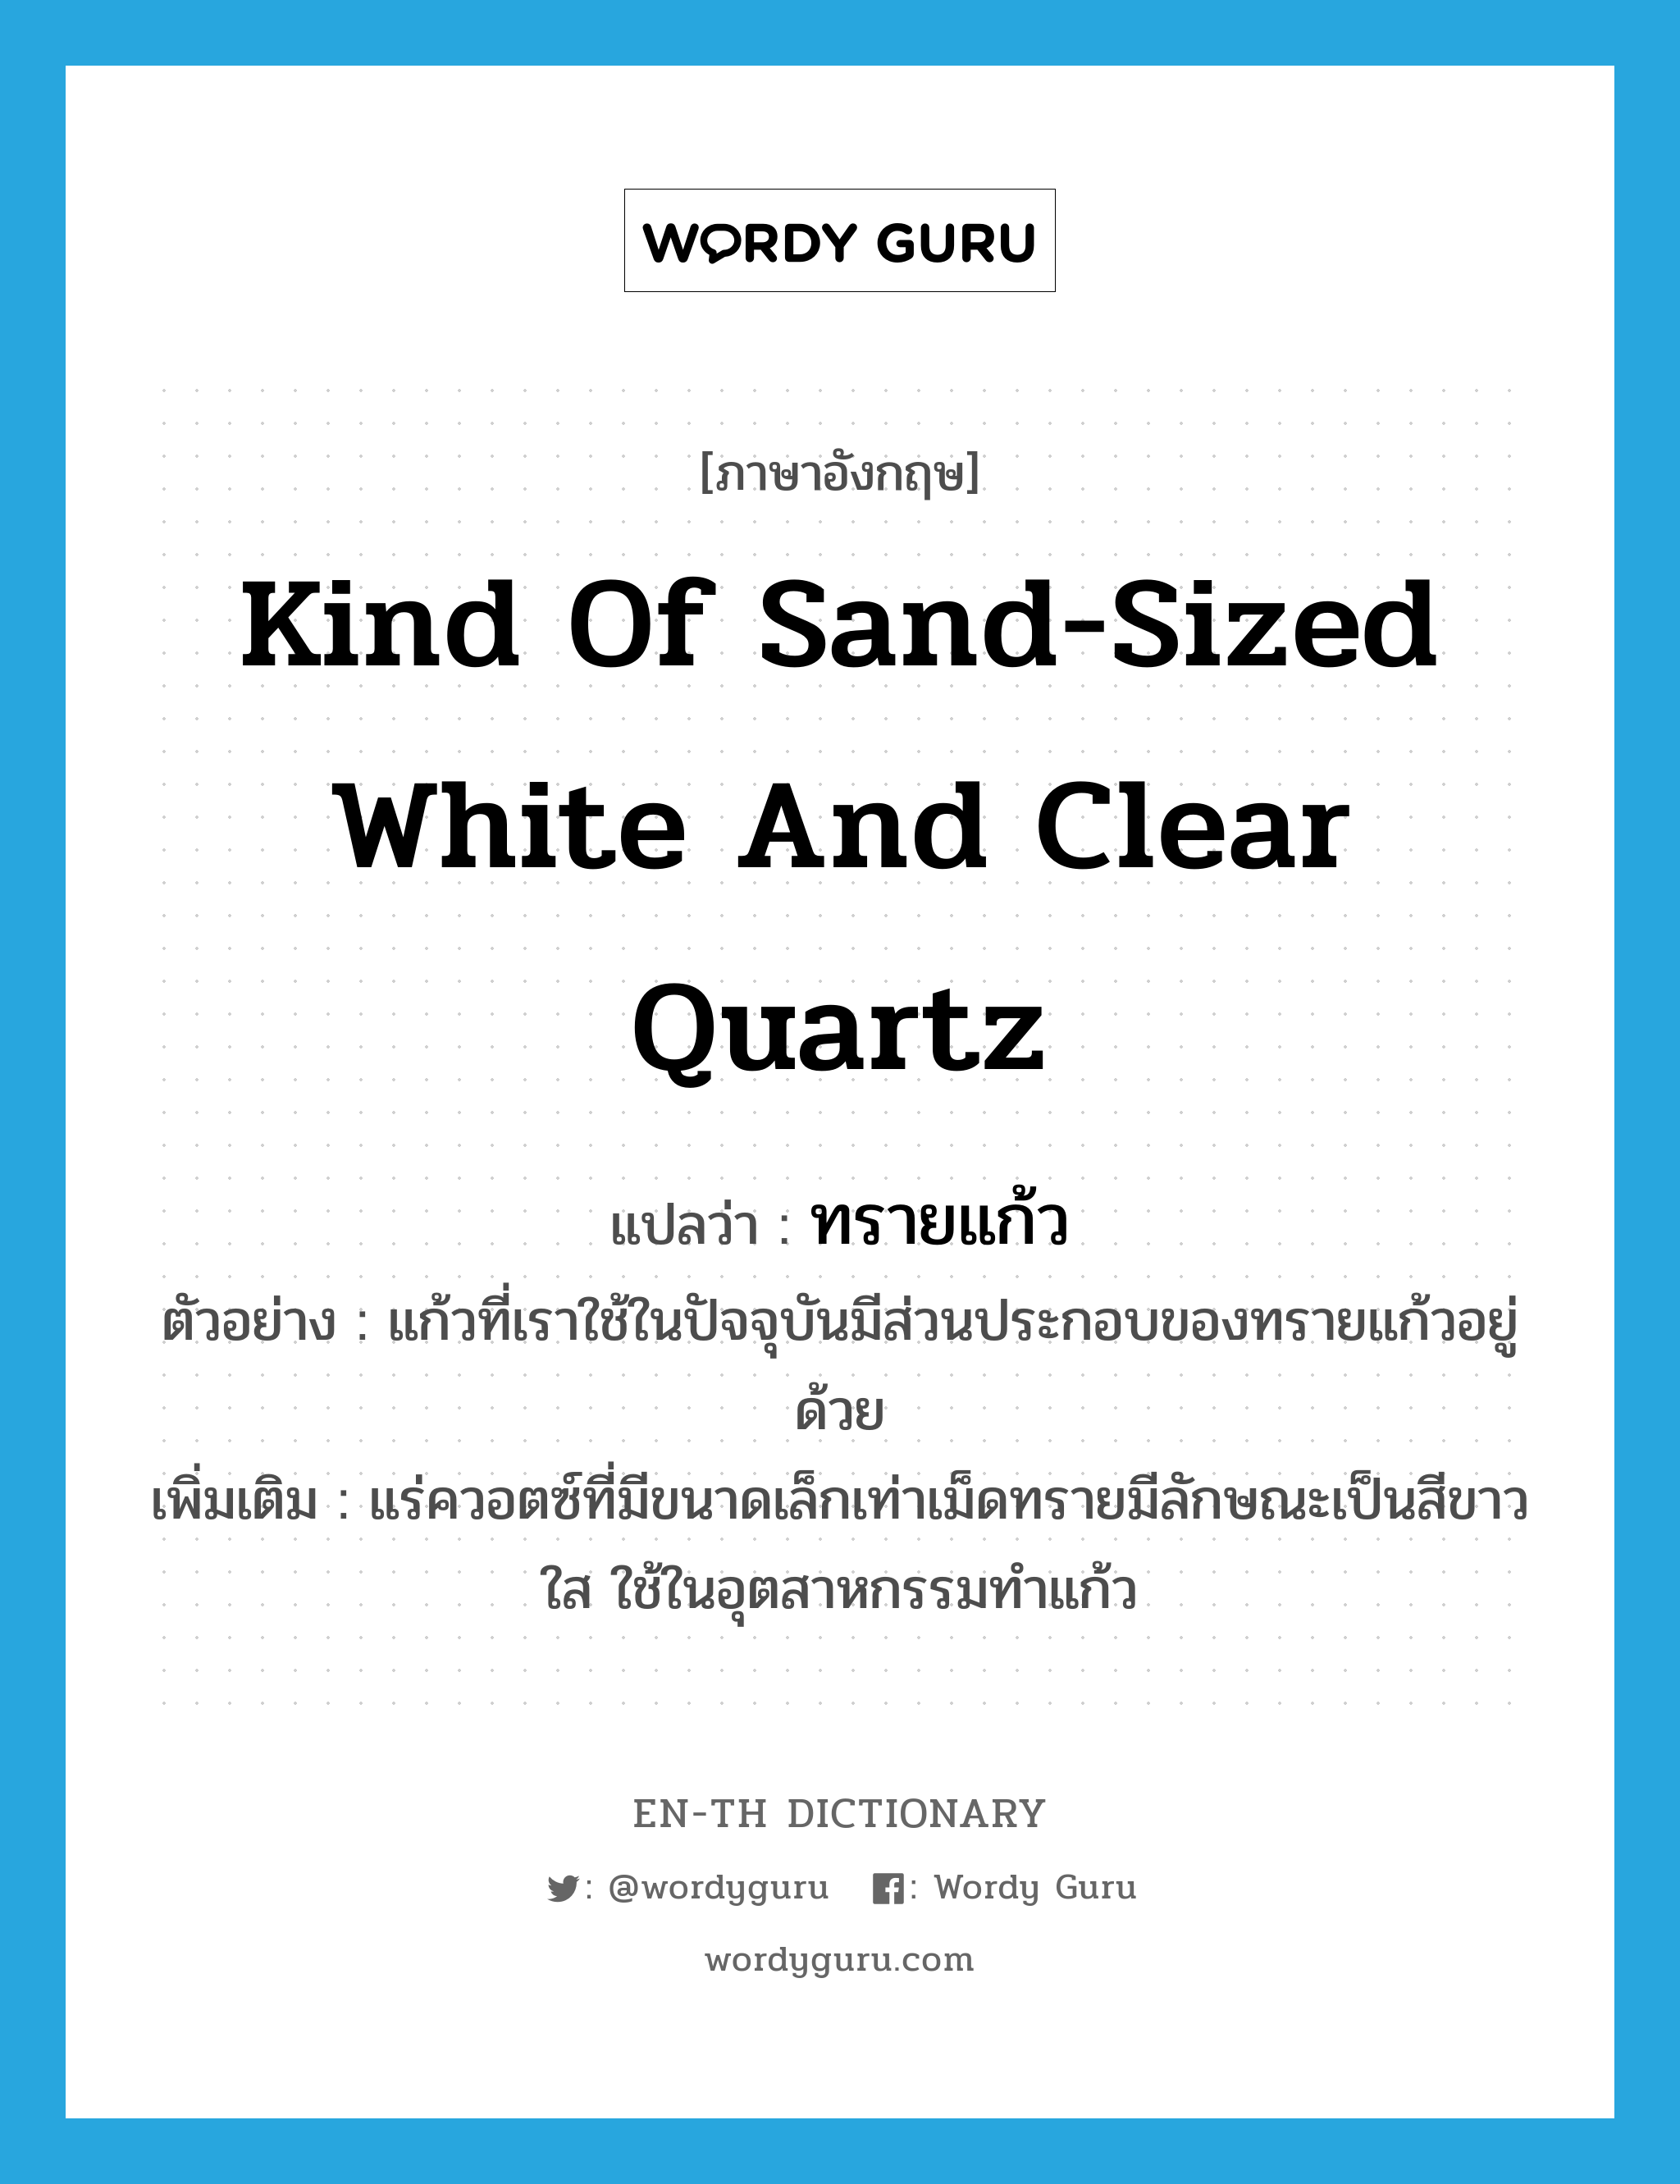 kind of sand-sized white and clear quartz แปลว่า?, คำศัพท์ภาษาอังกฤษ kind of sand-sized white and clear quartz แปลว่า ทรายแก้ว ประเภท N ตัวอย่าง แก้วที่เราใช้ในปัจจุบันมีส่วนประกอบของทรายแก้วอยู่ด้วย เพิ่มเติม แร่ควอตซ์ที่มีขนาดเล็กเท่าเม็ดทรายมีลักษณะเป็นสีขาวใส ใช้ในอุตสาหกรรมทำแก้ว หมวด N